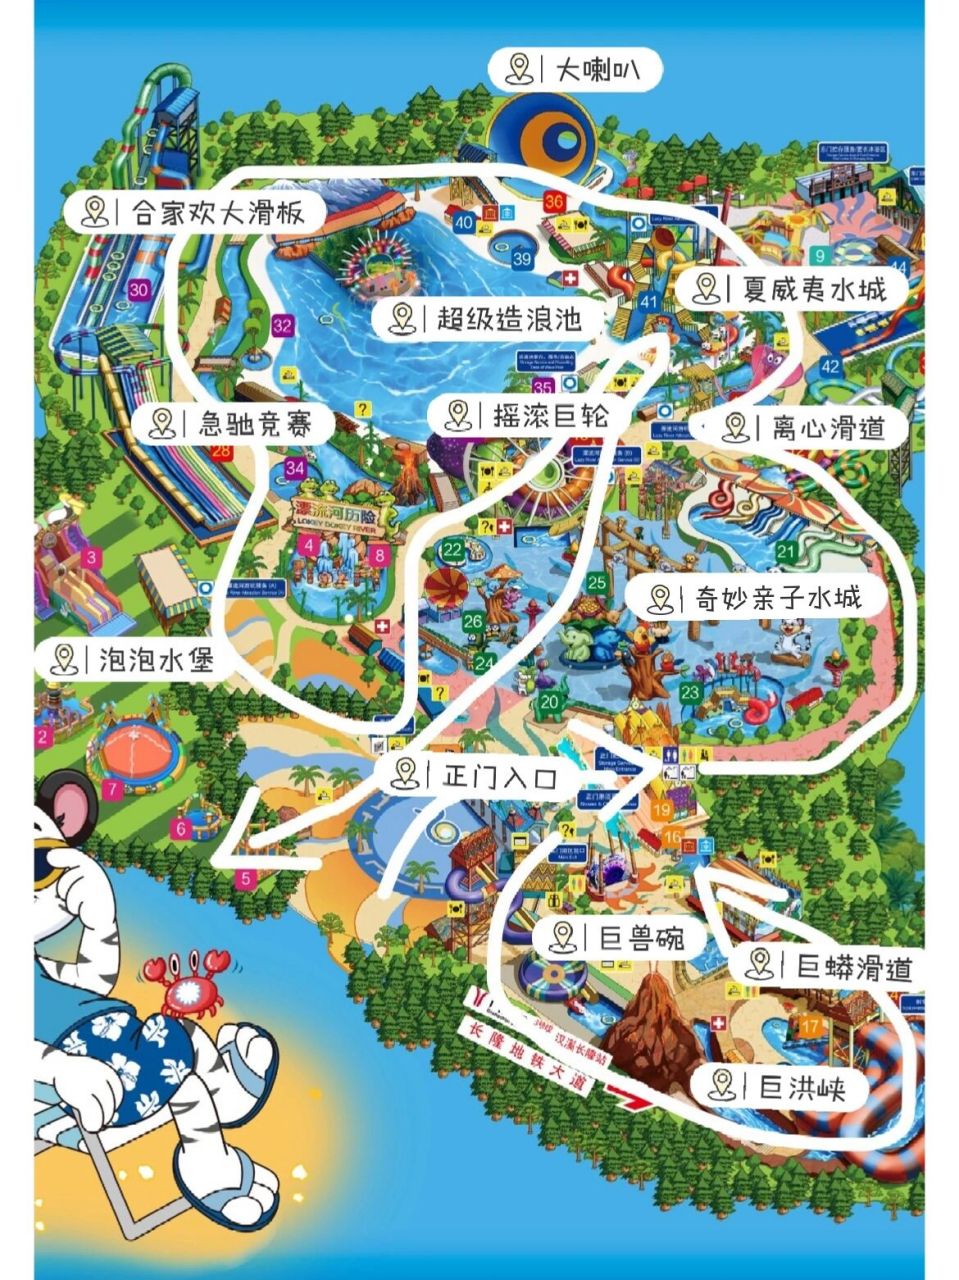 广州长隆水上乐园攻略(游玩路线) 上一篇笔记说了水上乐园的游玩准备